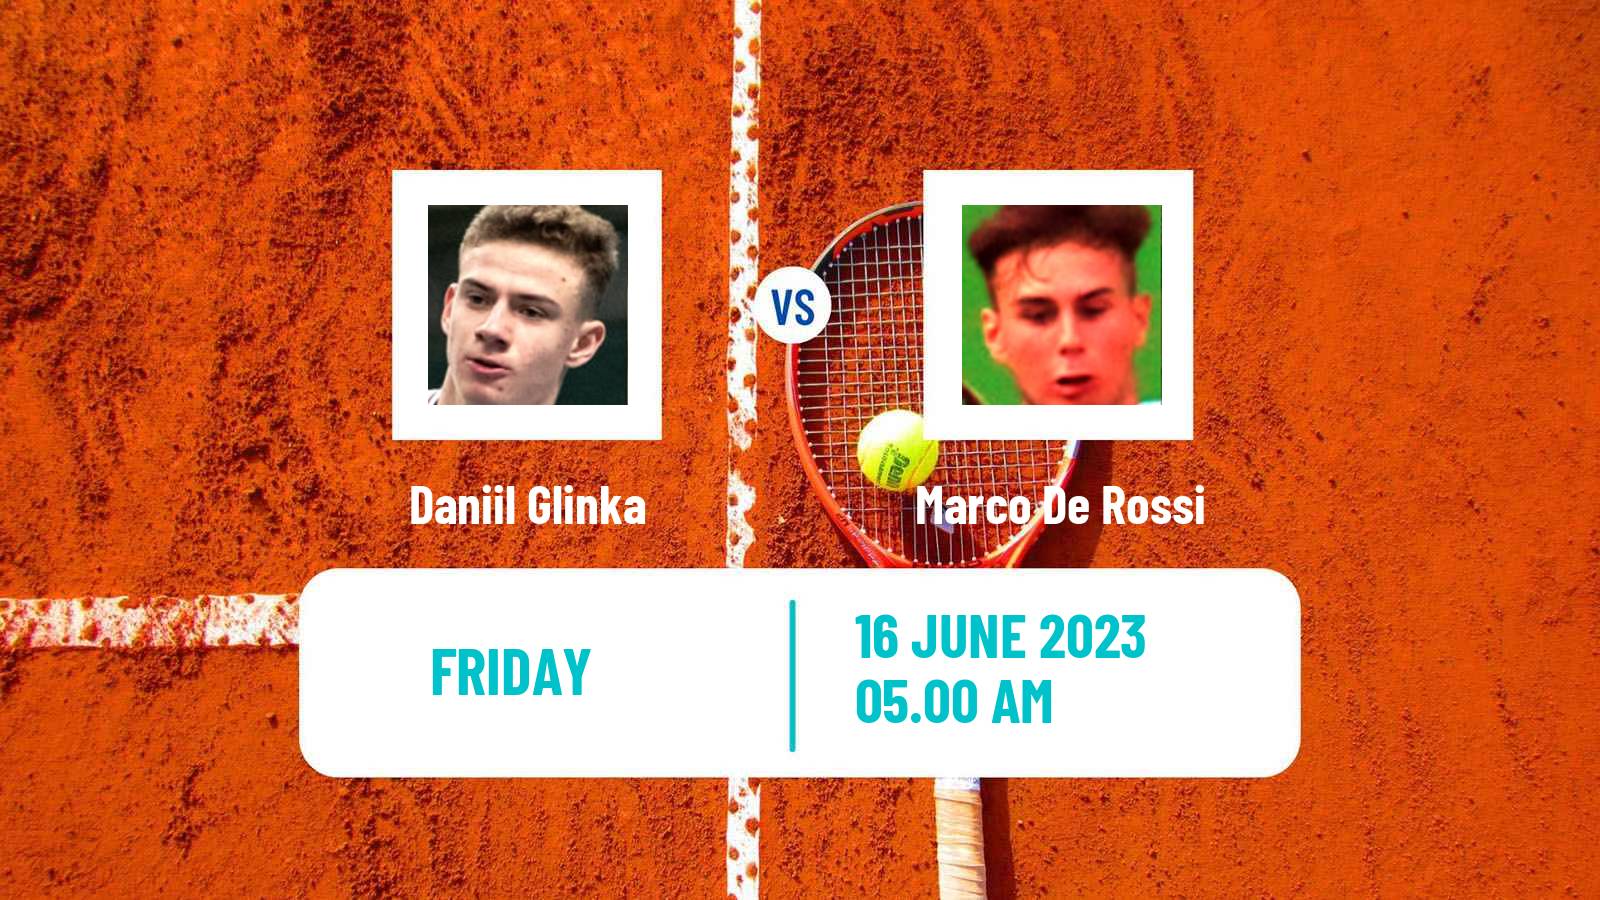 Tennis Davis Cup Group III Daniil Glinka - Marco De Rossi